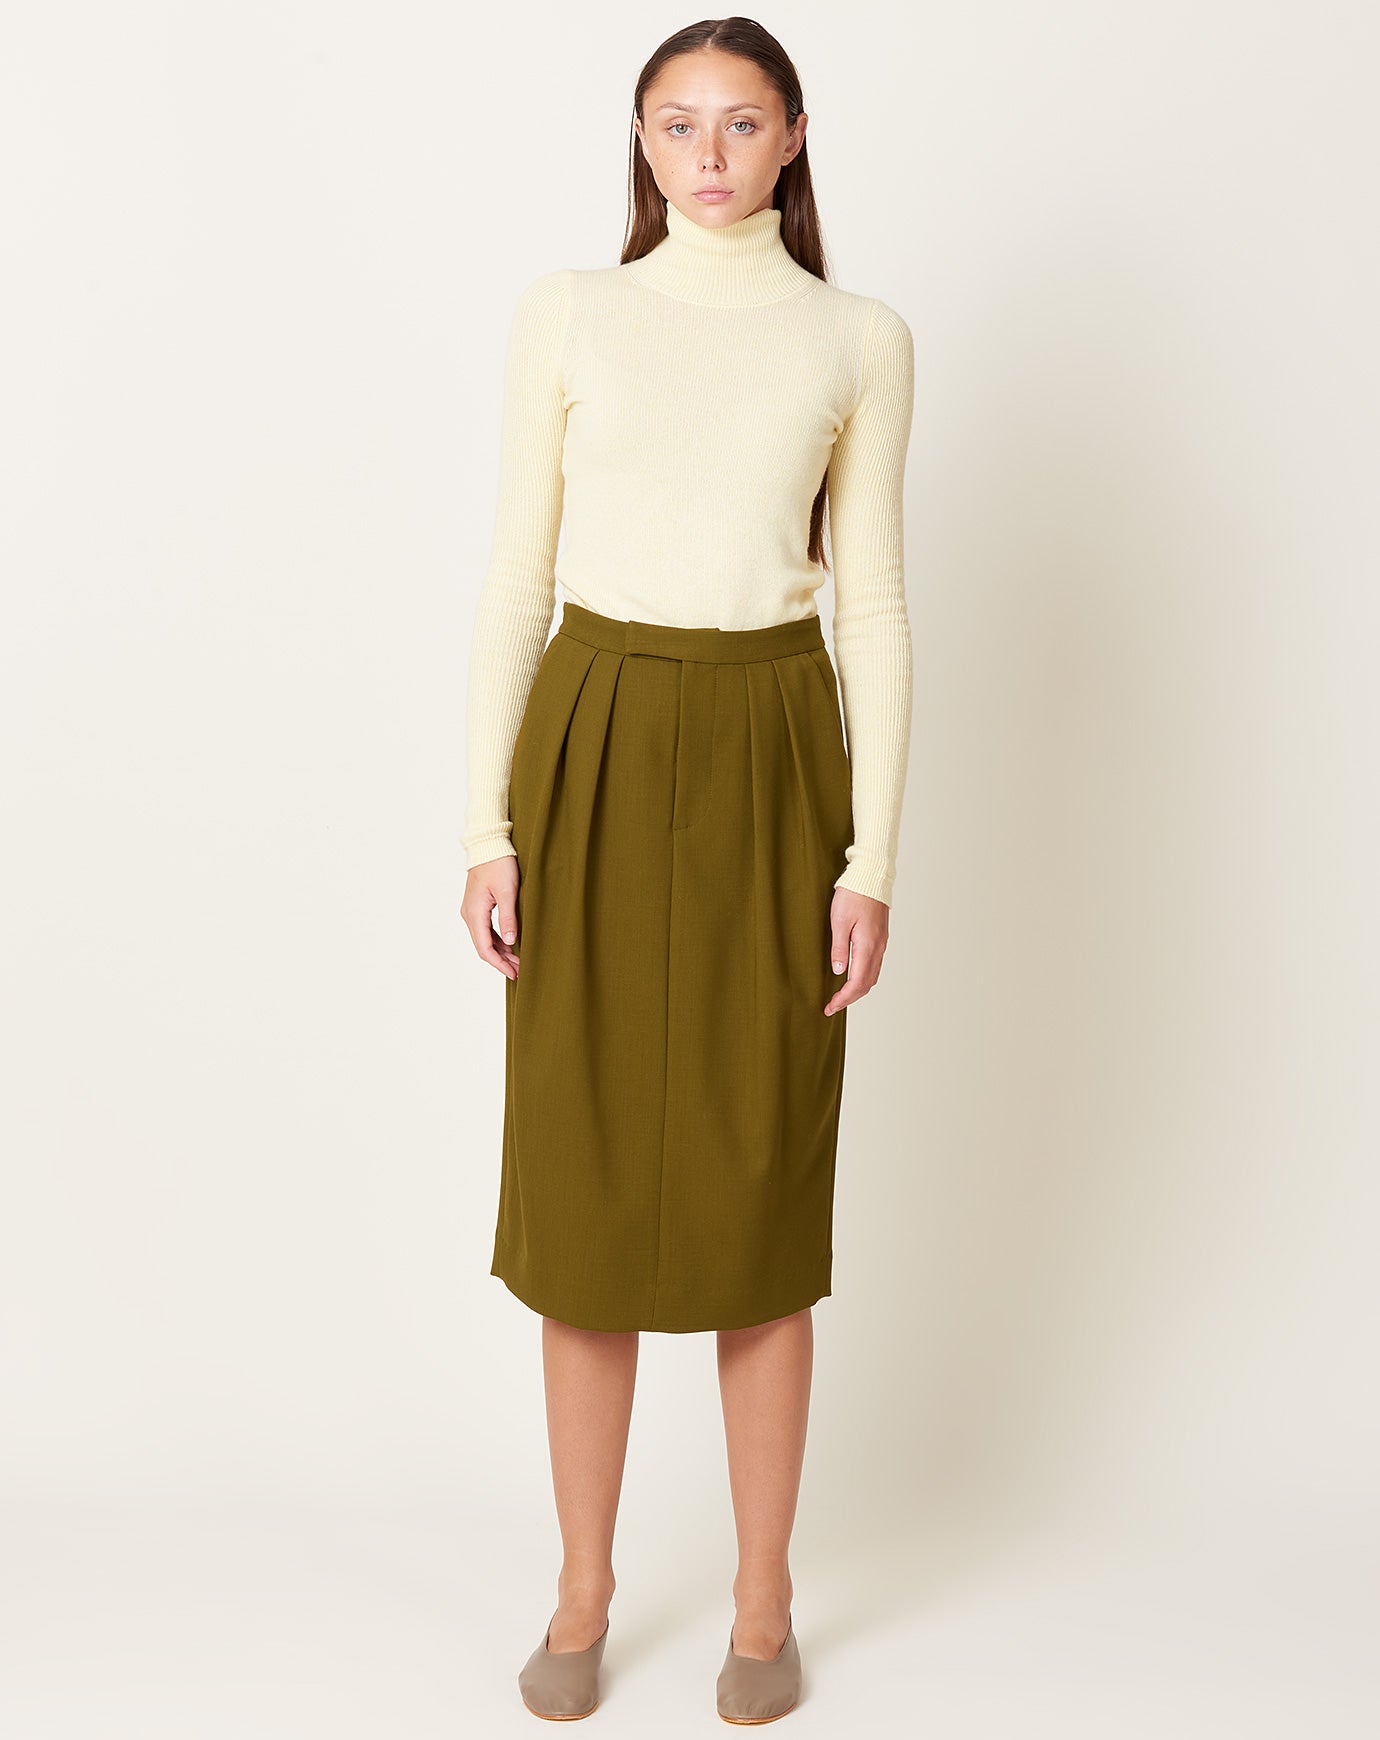 Rachel Comey Danziger Skirt in Olive